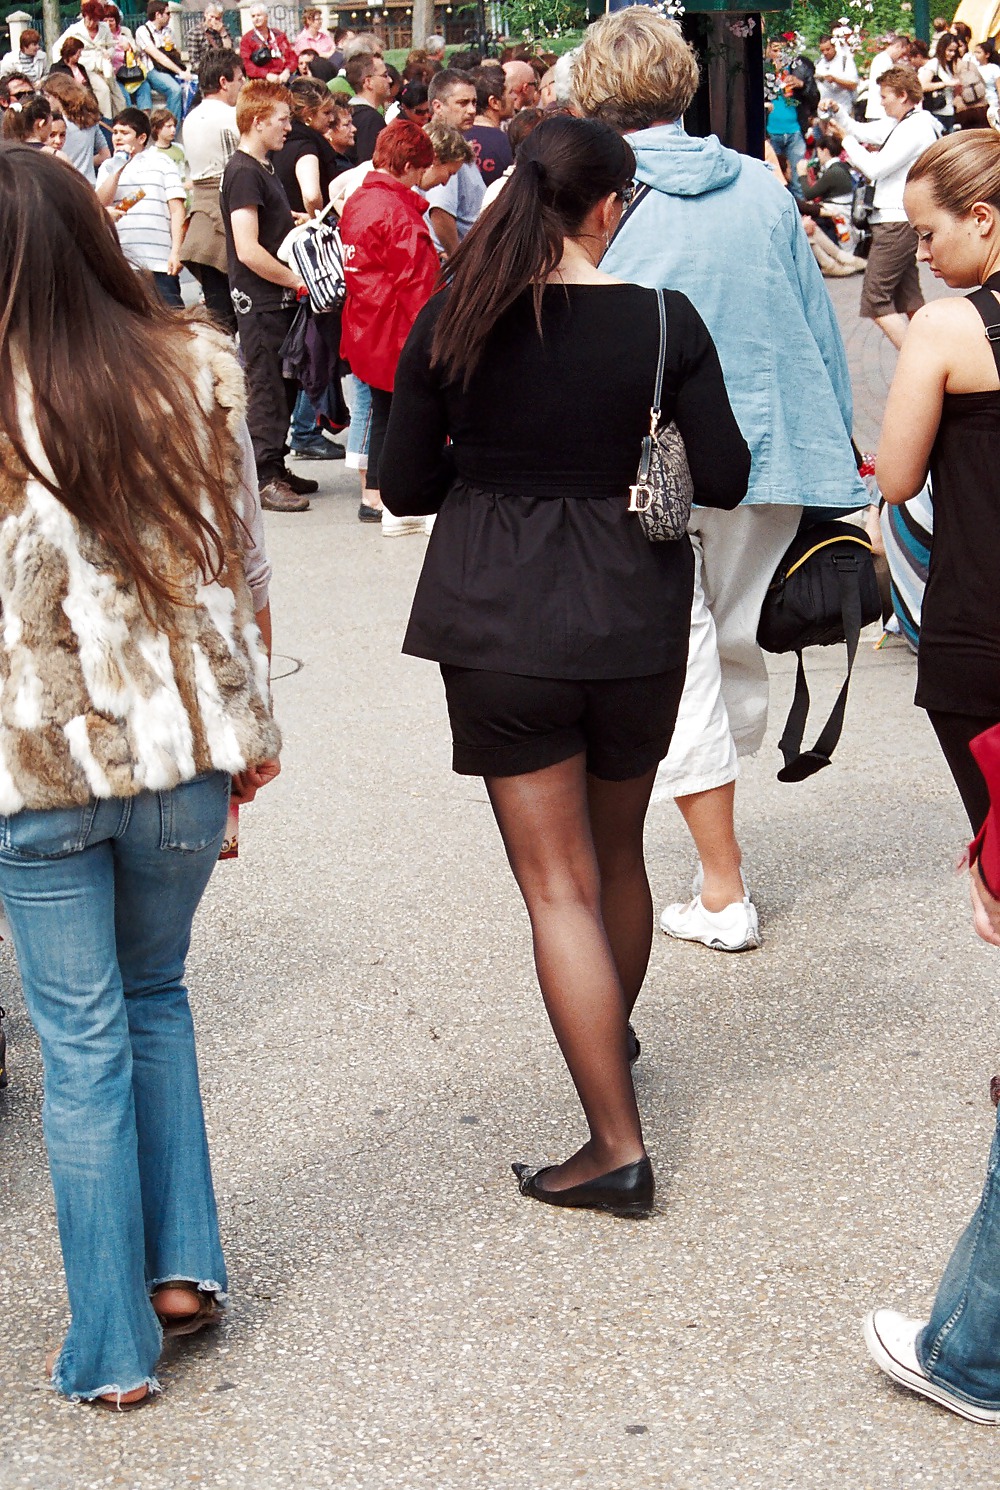 Stocking girls in public. Paris, june 2008 #35789502